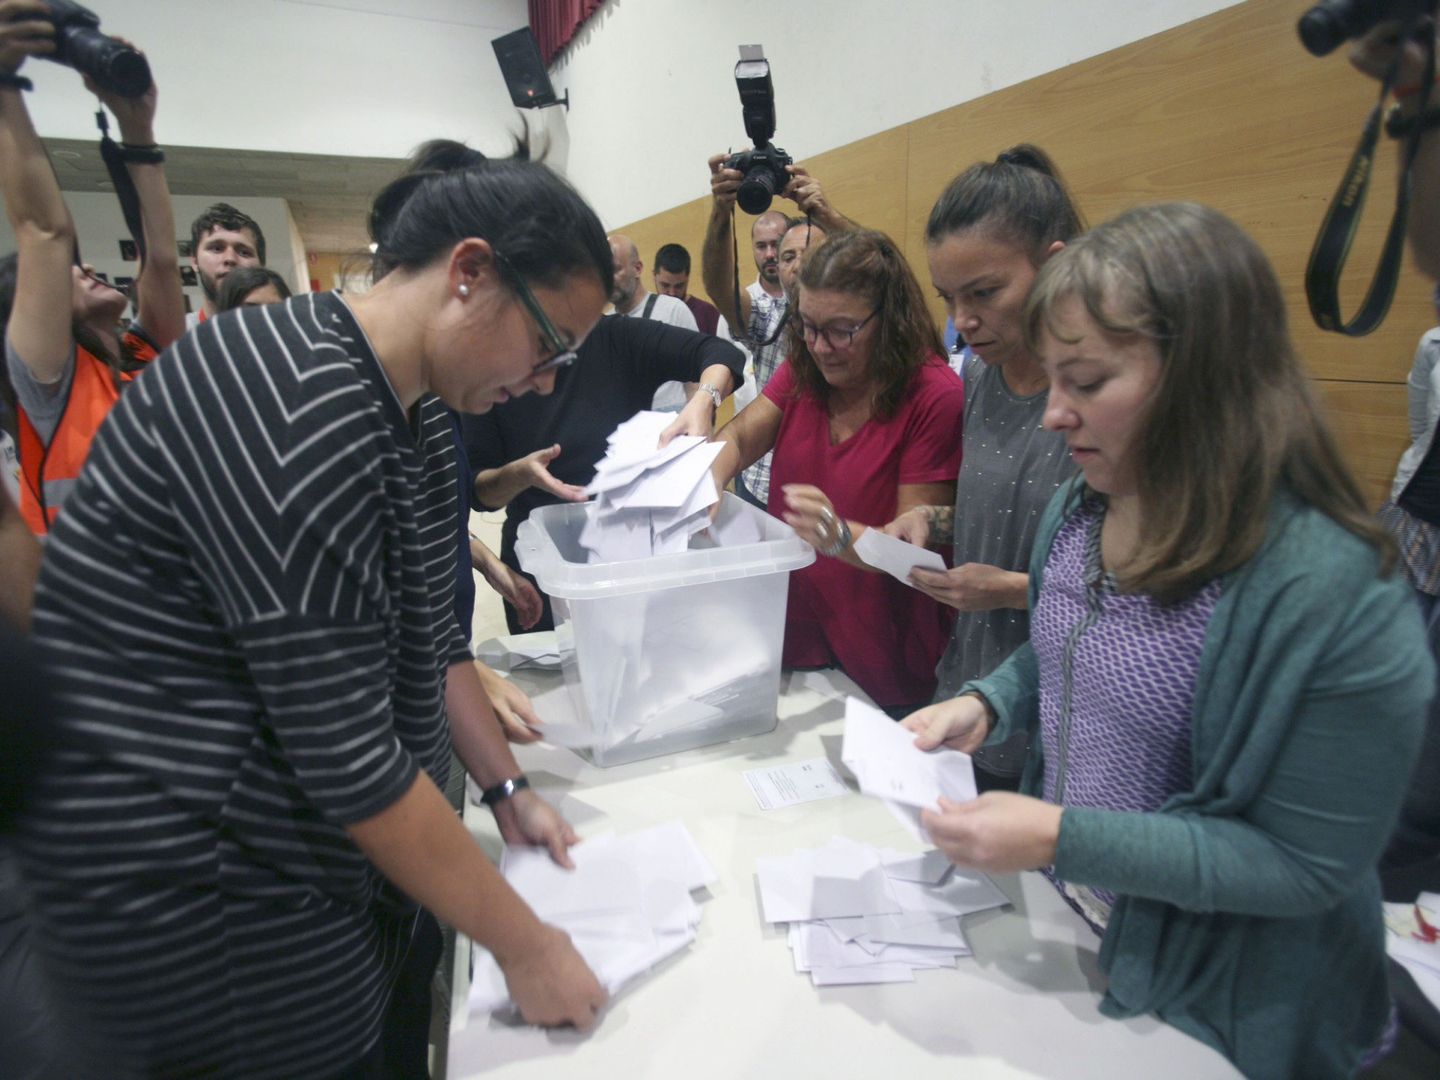 Recuento de votos sin ningún tipo de control oficial (Jaume Sellart / EFE)